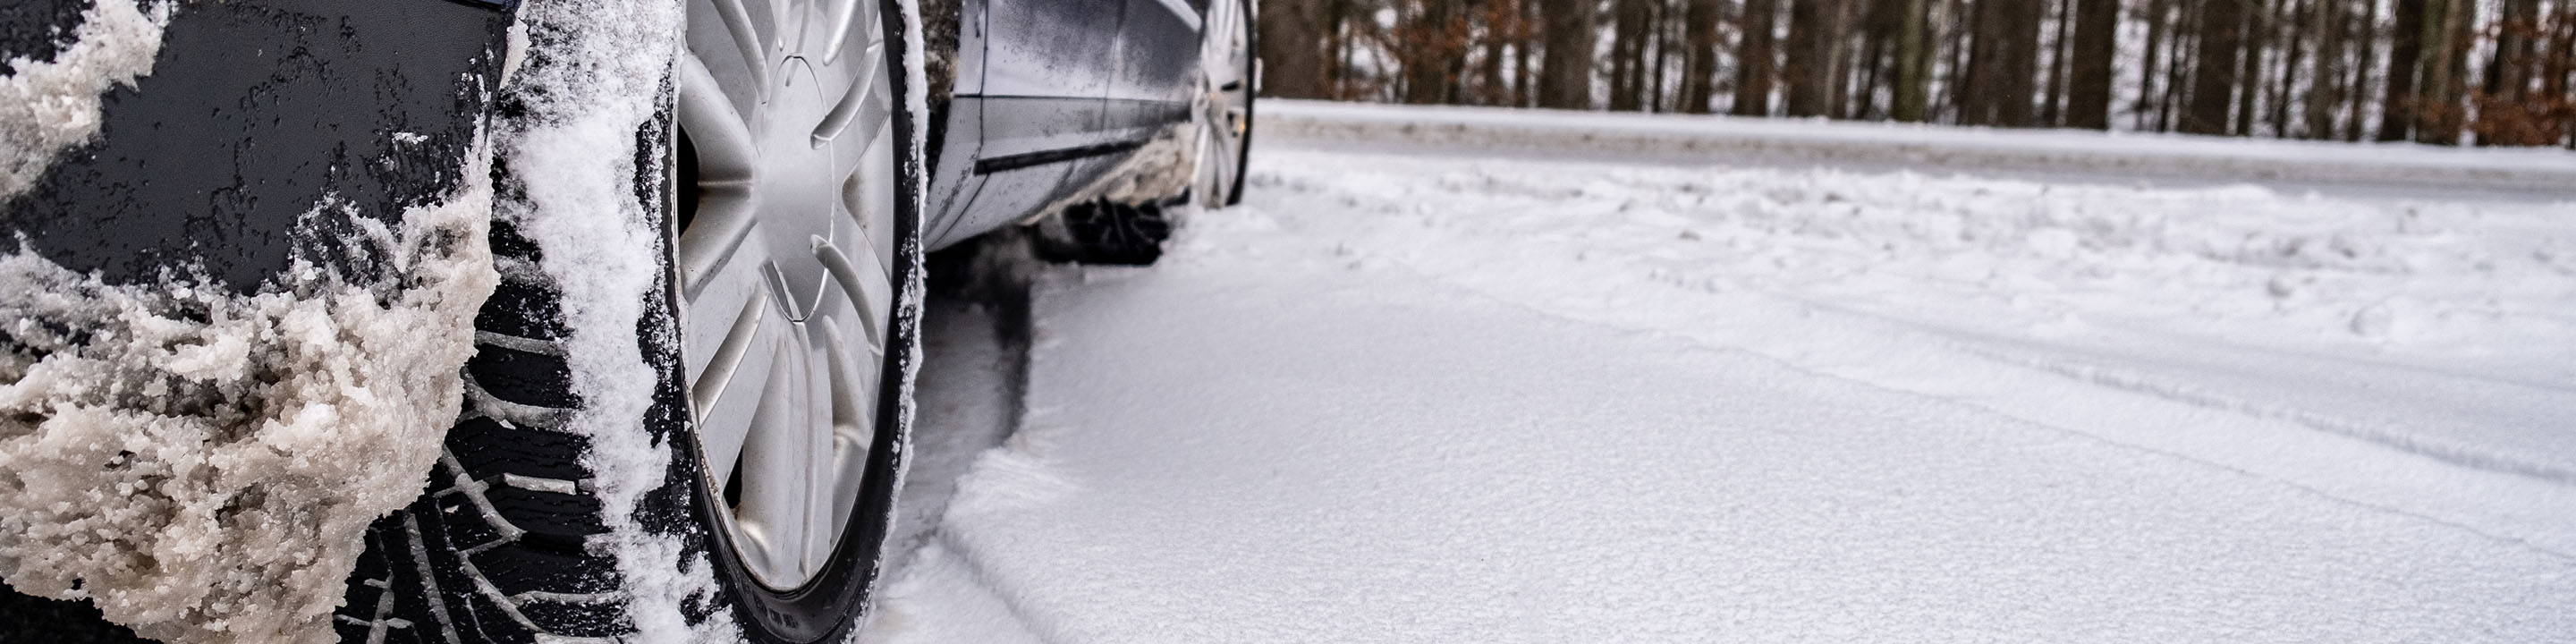 La question de la semaine sur la couverture d'assurance automobile et les  pneus d'hiver